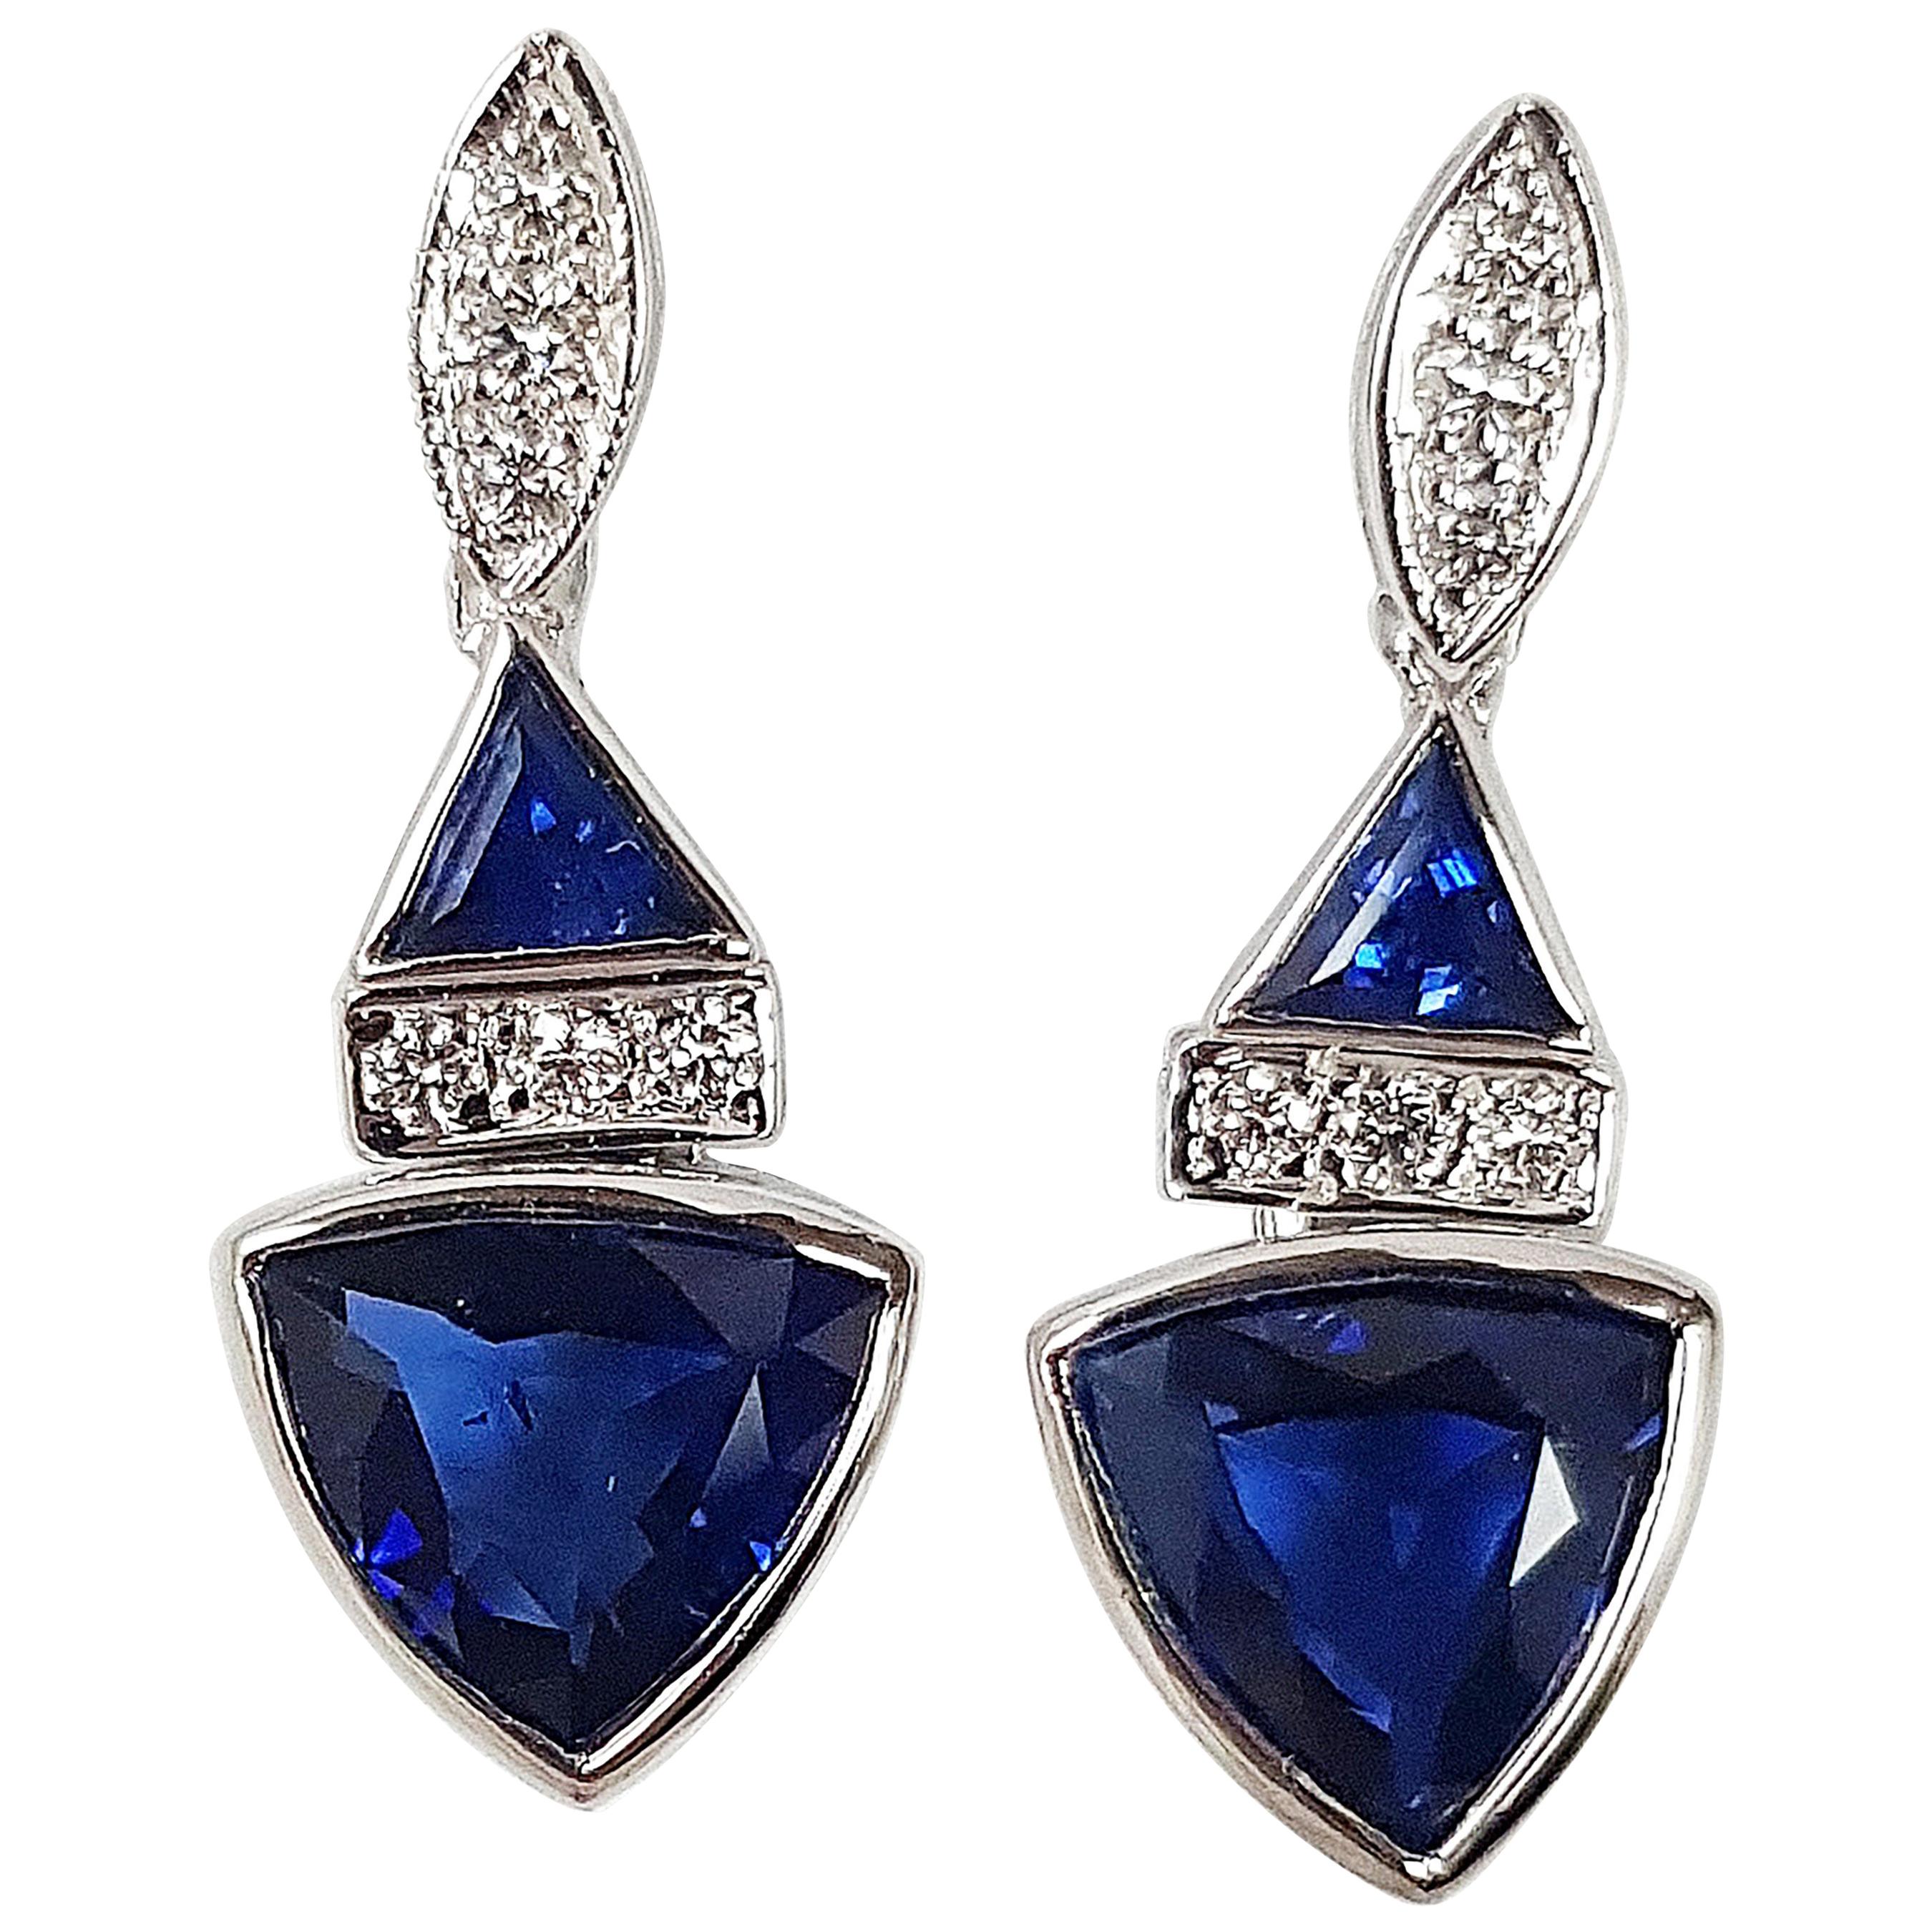 Boucles d'oreilles en or blanc 18 carats avec saphir bleu de forme triangulaire et diamants sertis